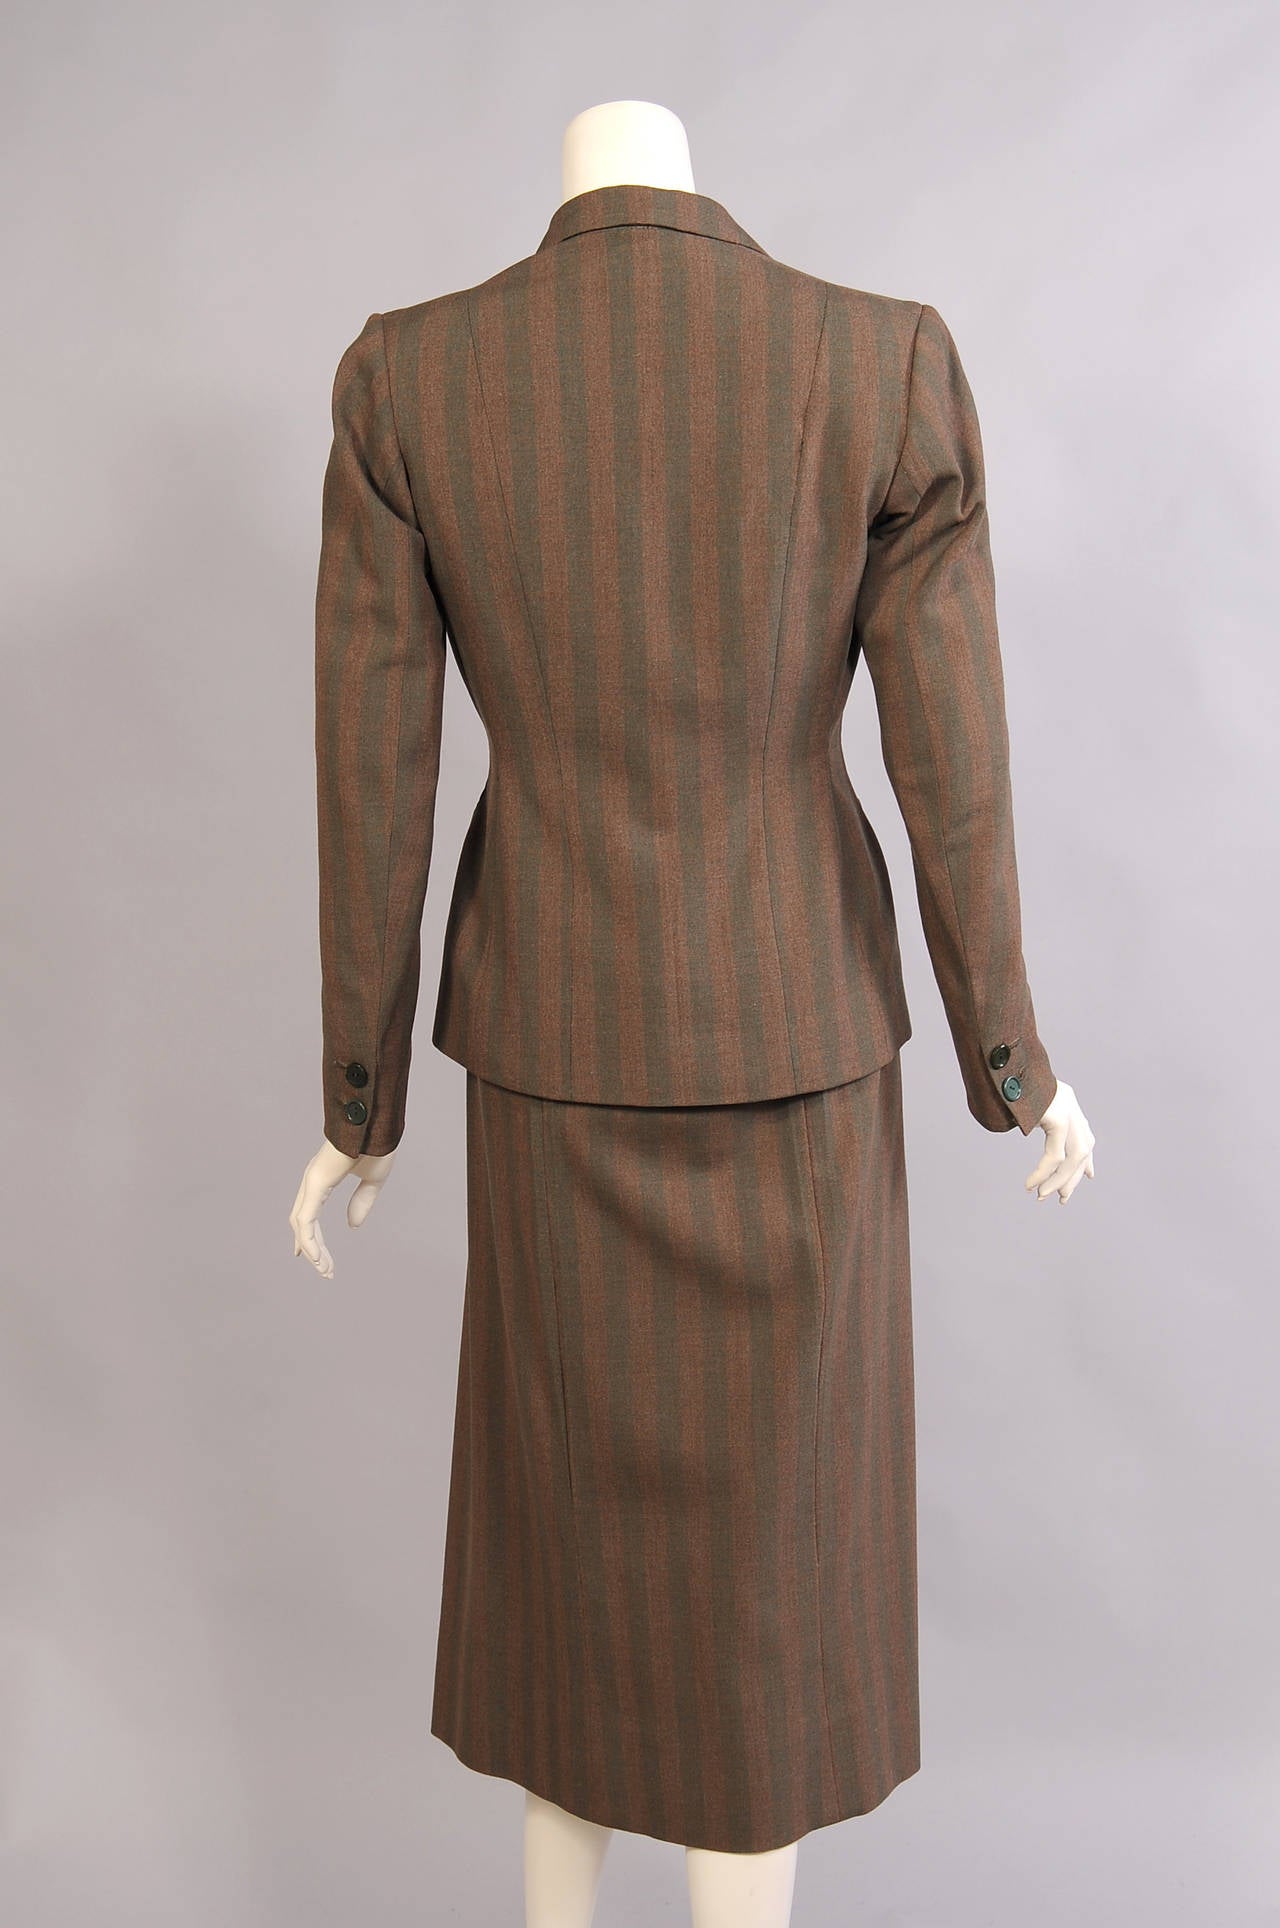 Brown Rare 1940's Hermes Three Piece Suit, Museum de accession